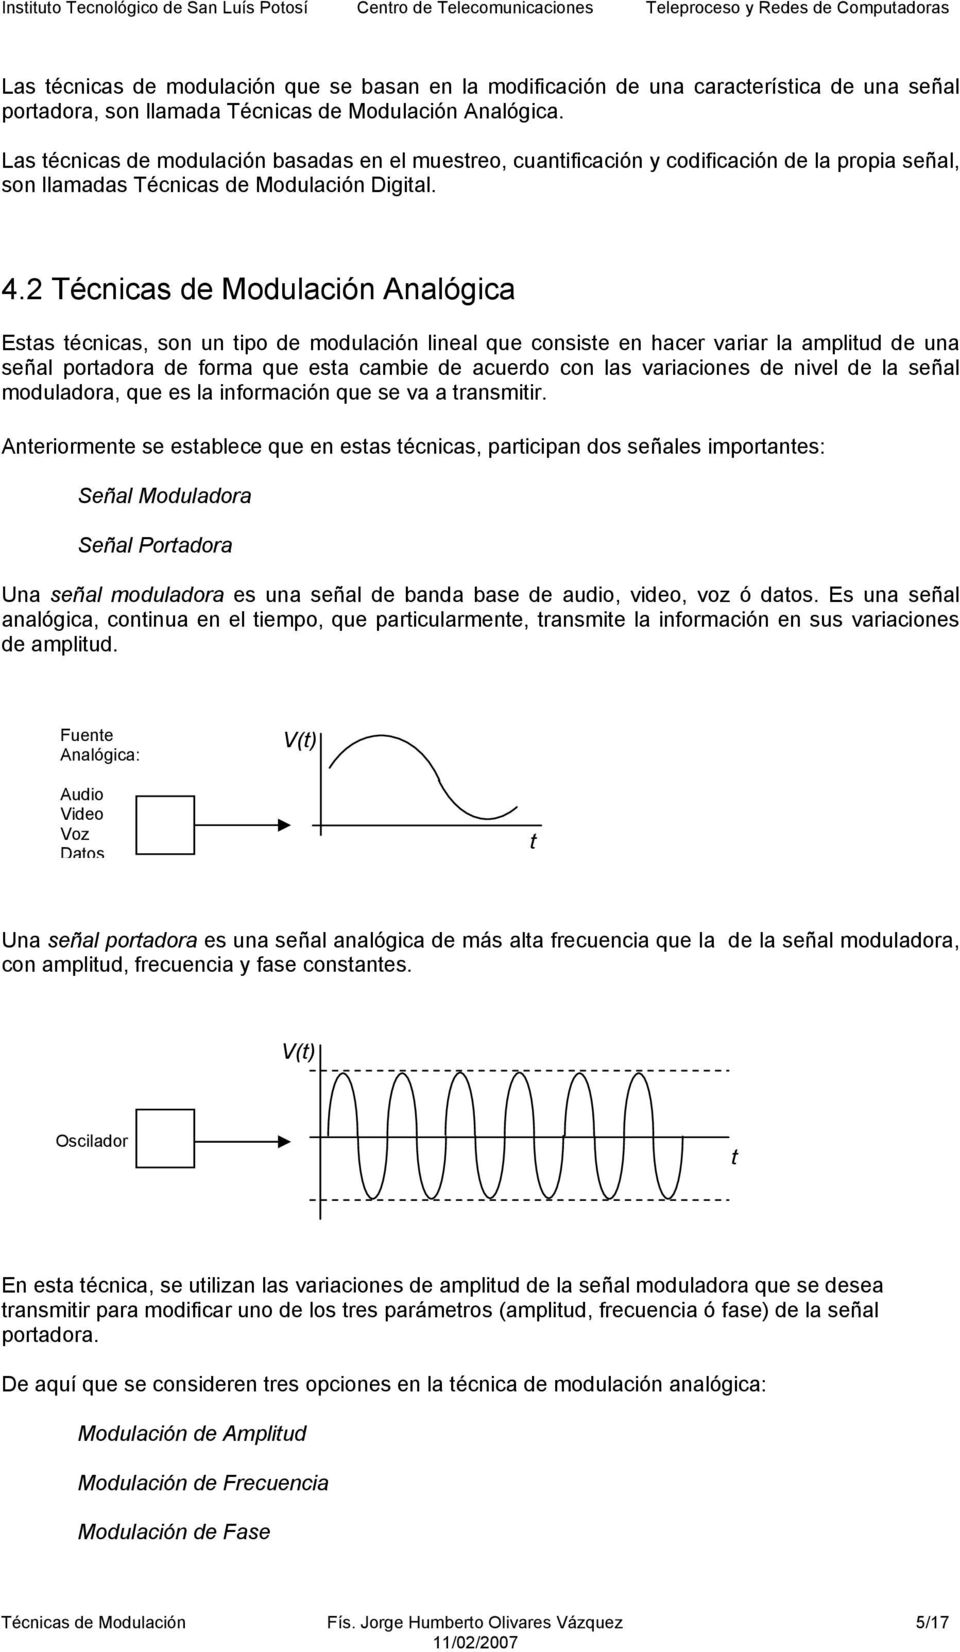 2 Técnicas de Modulación Esas écnicas, son un ipo de modulación lineal que consise en hacer variar la ampliud de una señal poradora de forma que esa cambie de acuerdo con las variaciones de nivel de